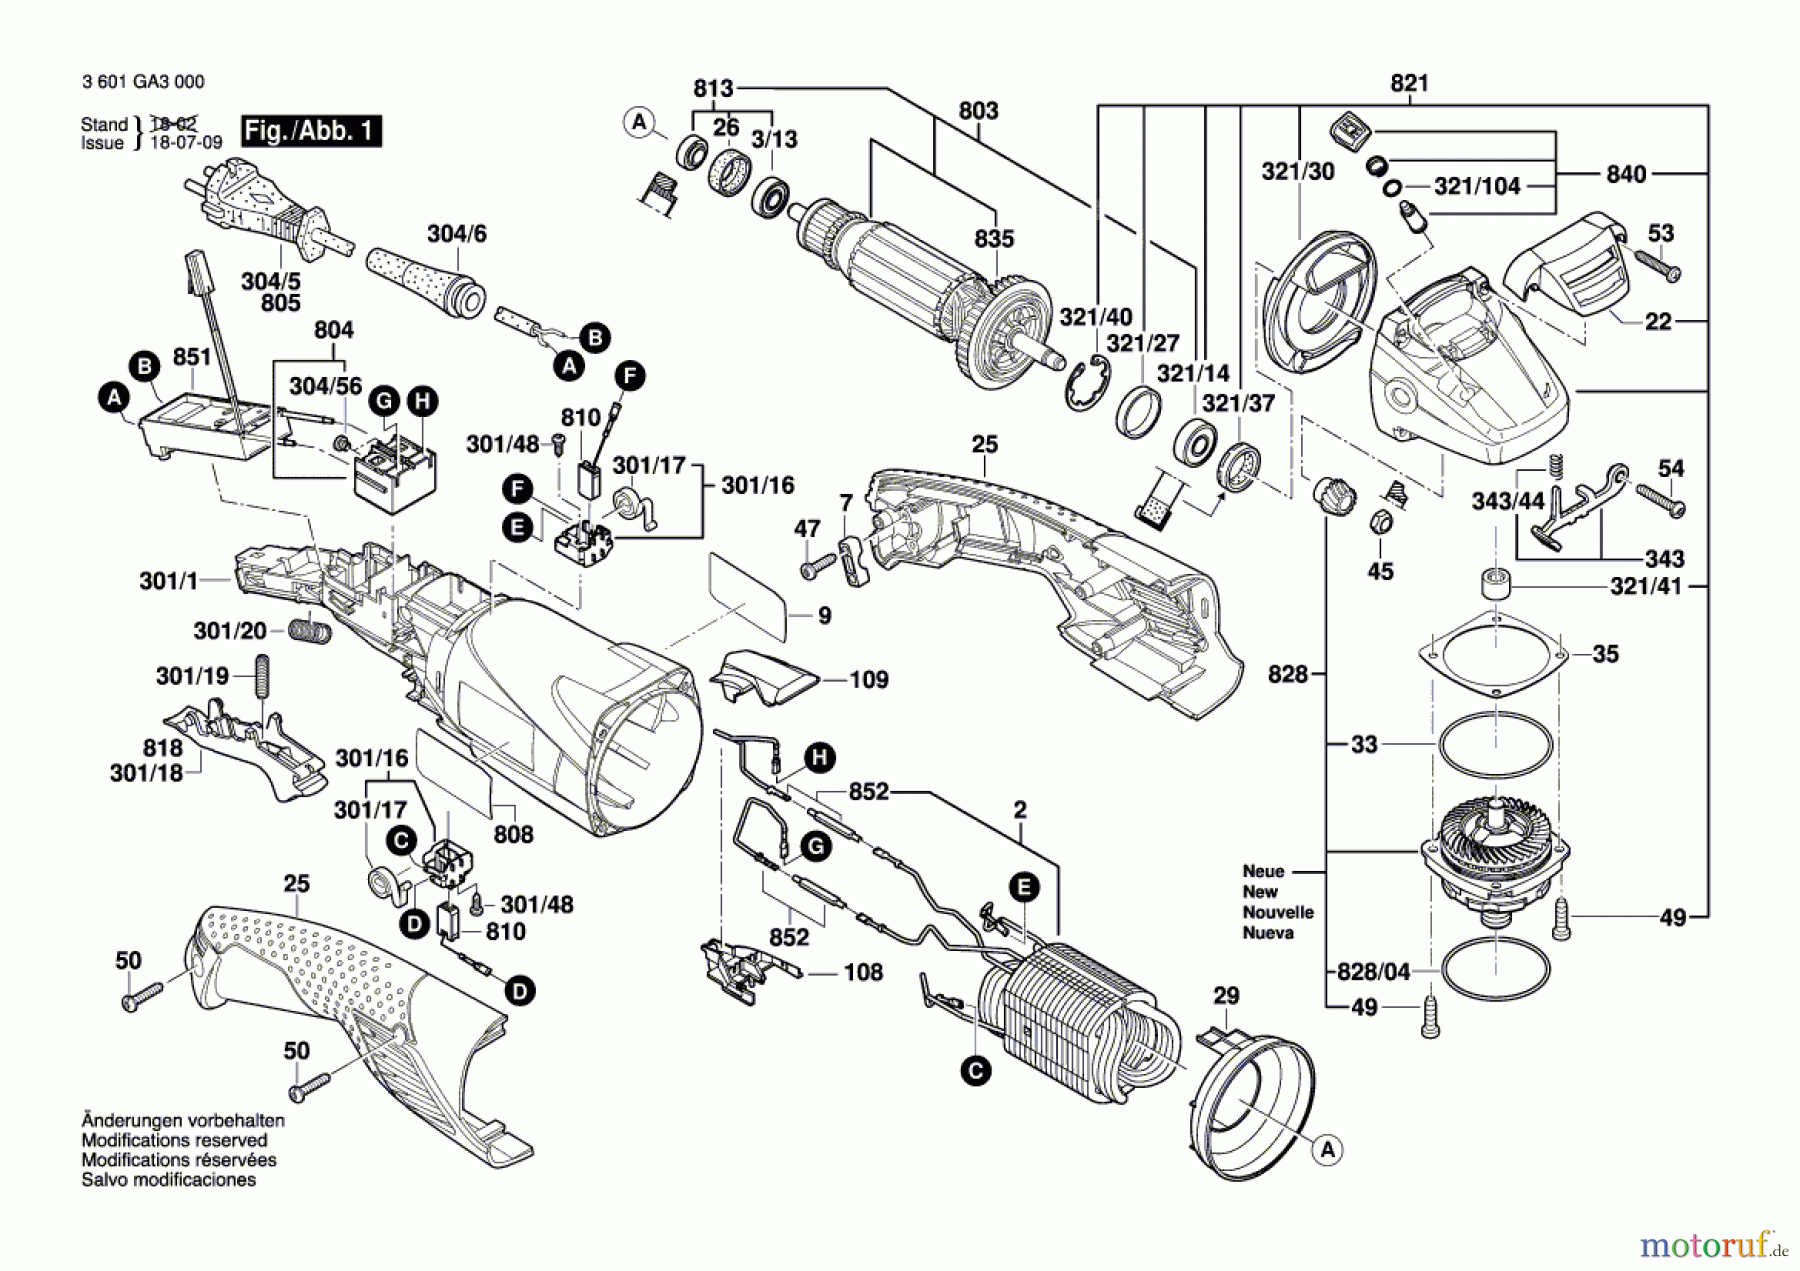  Bosch Werkzeug Winkelschleifer GWS 18-125 L Seite 1